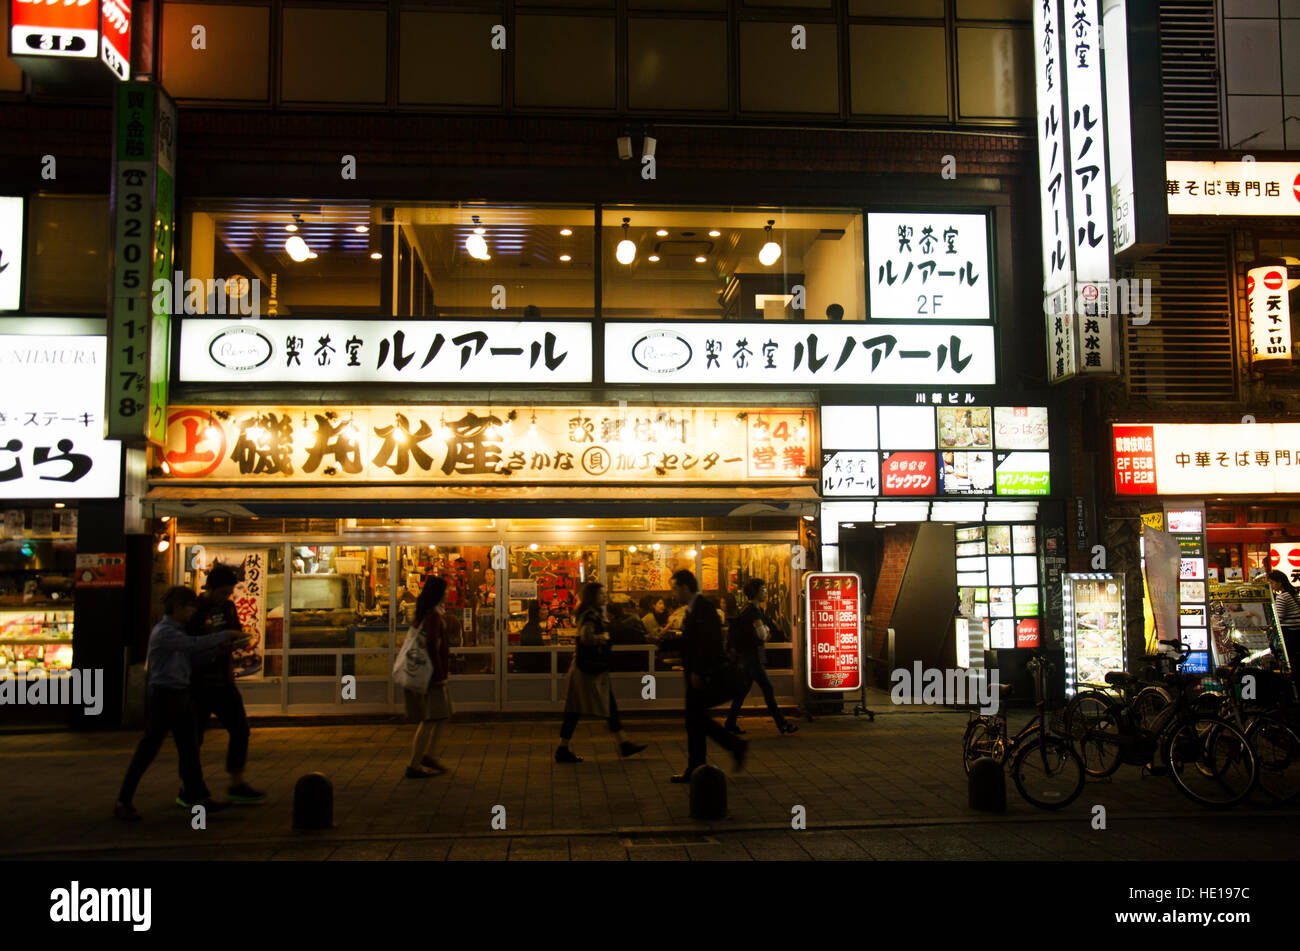 Il popolo giapponese e viaggiatori straniero a piedi parte anteriore del locale ristorante giapponese ad Okubo Dori in tempo di notte a Shinjuku city il 20 ottobre 2016 in Foto Stock